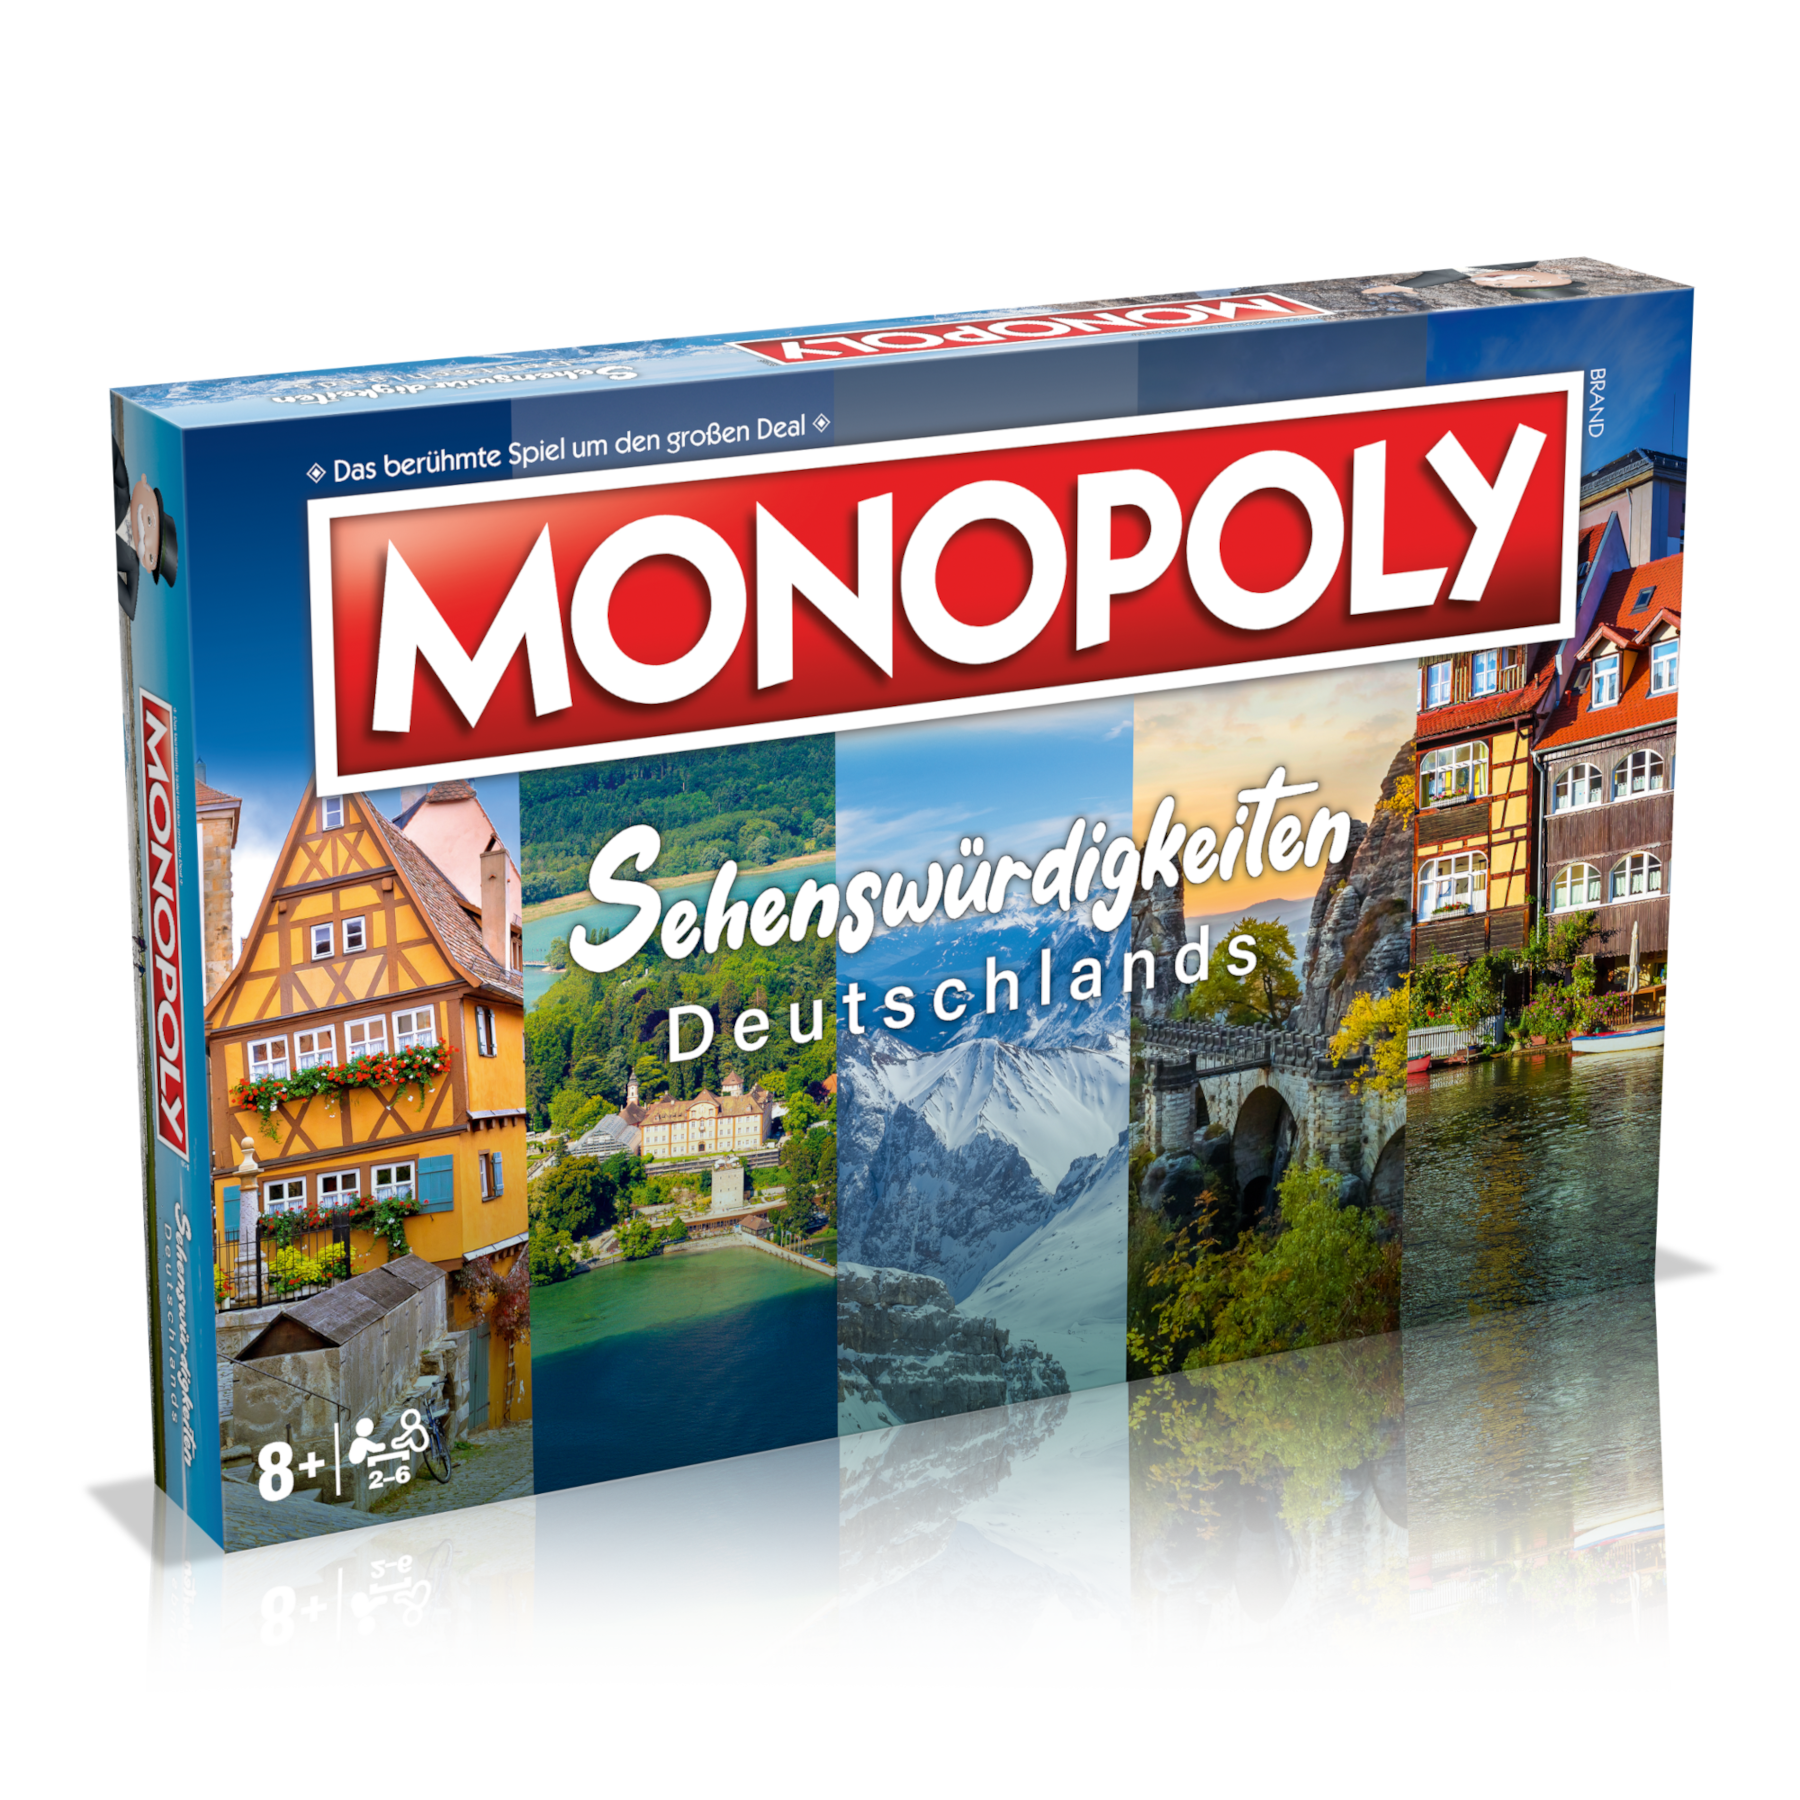 Monopoly - Sehenswürdigkeiten Deutschlands